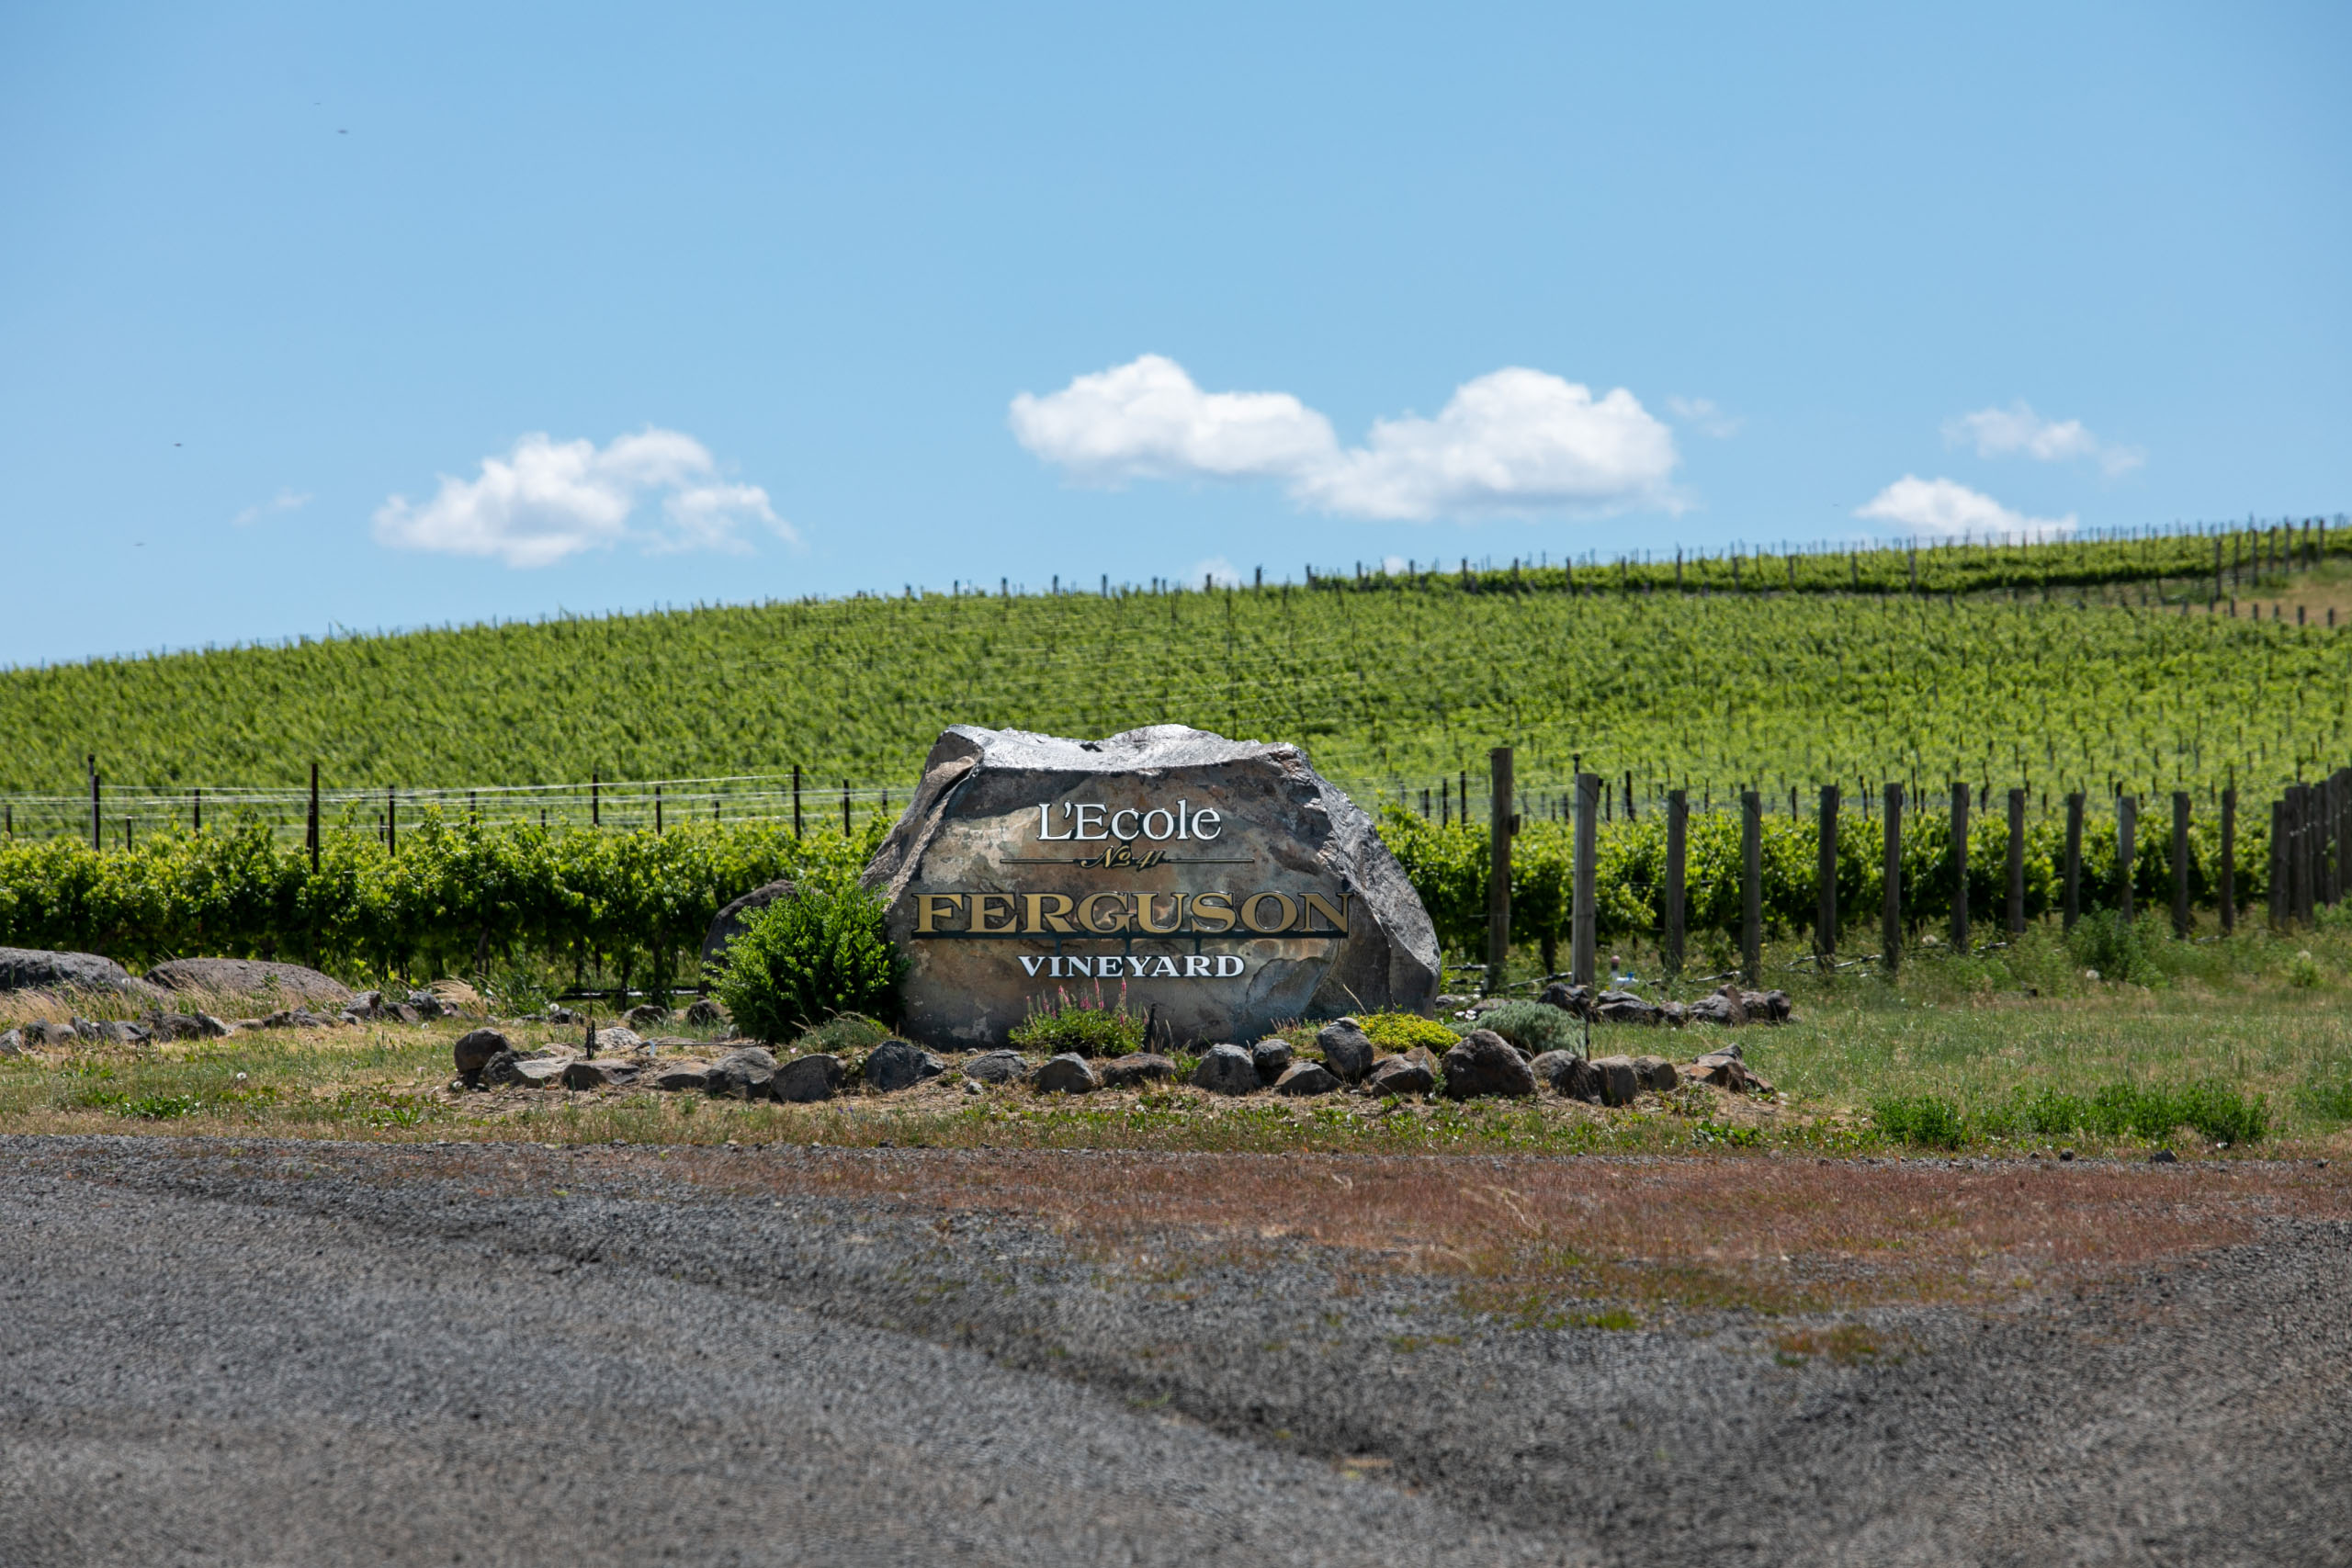 Ferguson Rock in front of vineyard